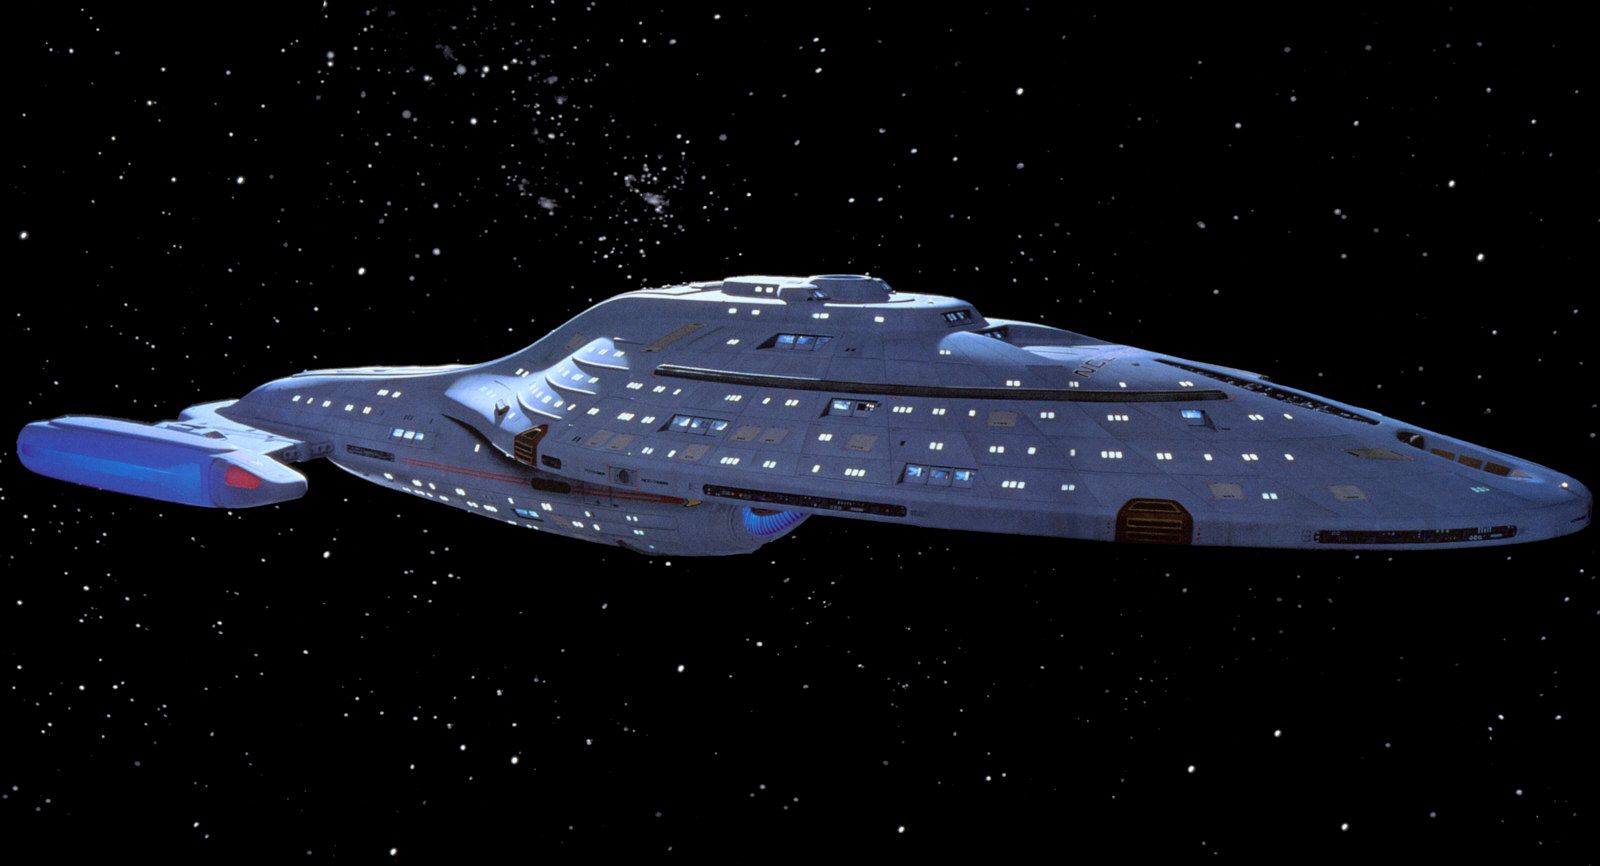 Voyager - Caretaker ship